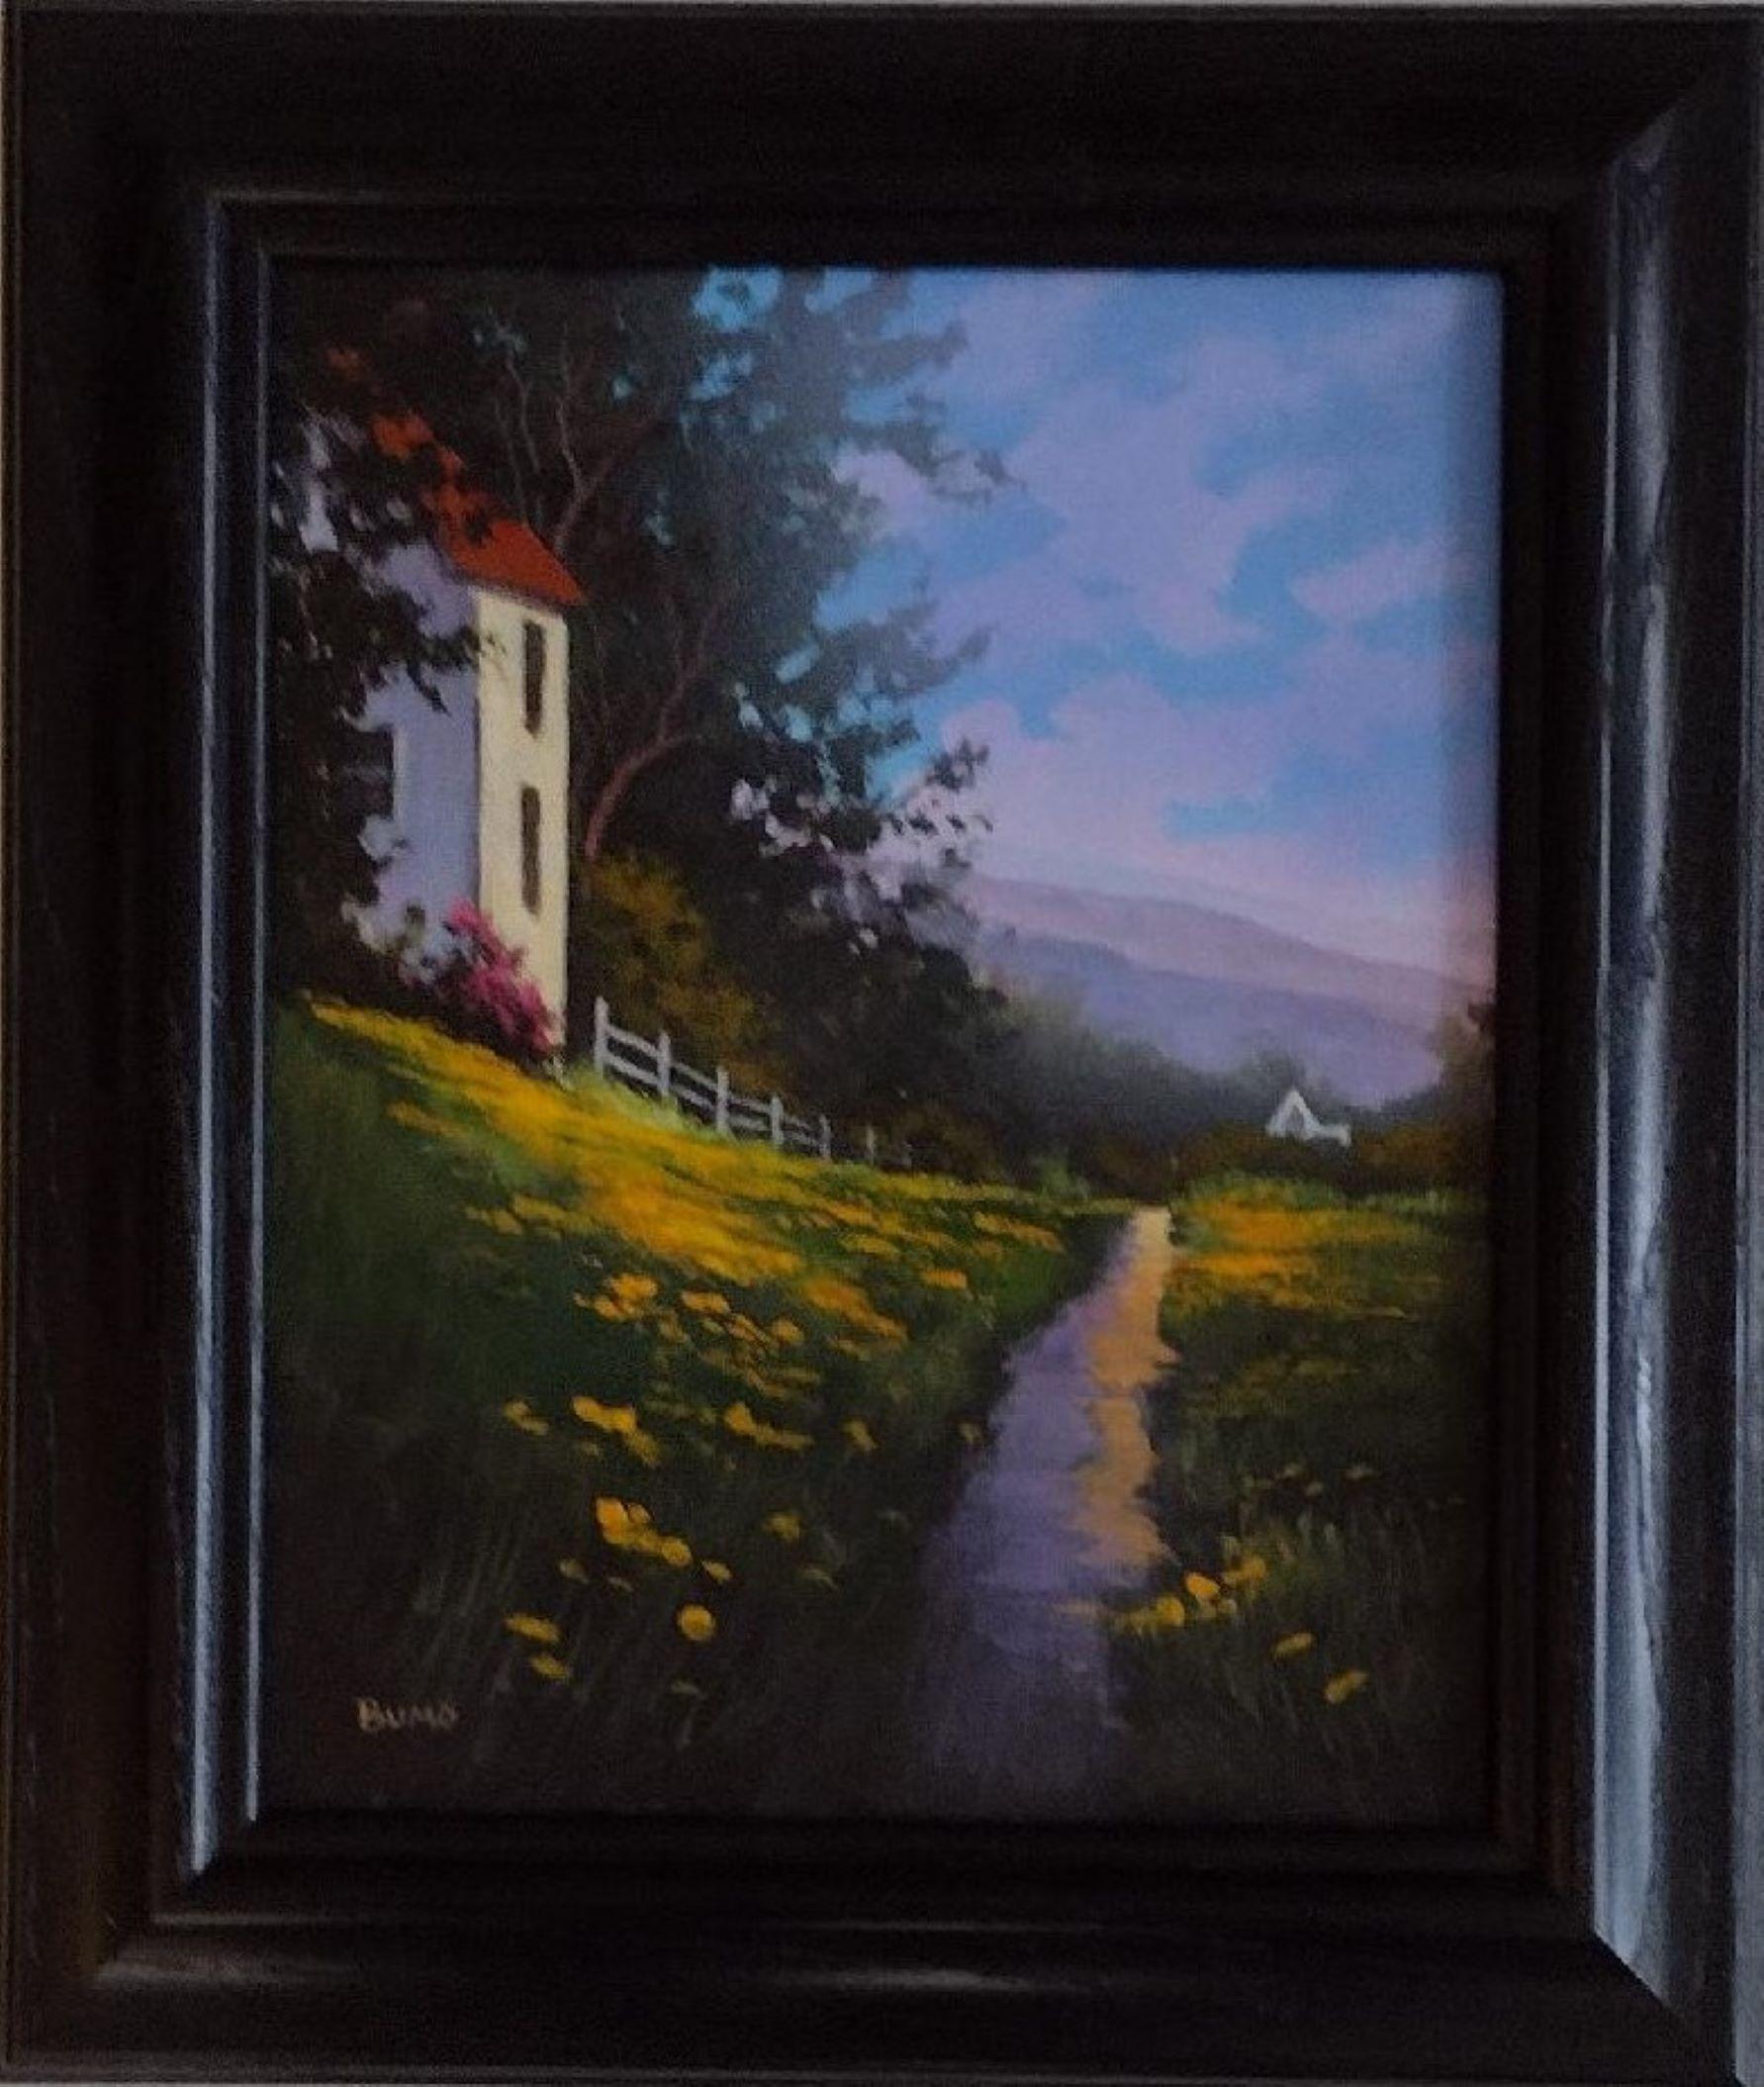 Landscape Painting Douglas "Bumo" Johnpeer - Path avant - Paysage original à l'acrylique sur toile avec maison dans le pays